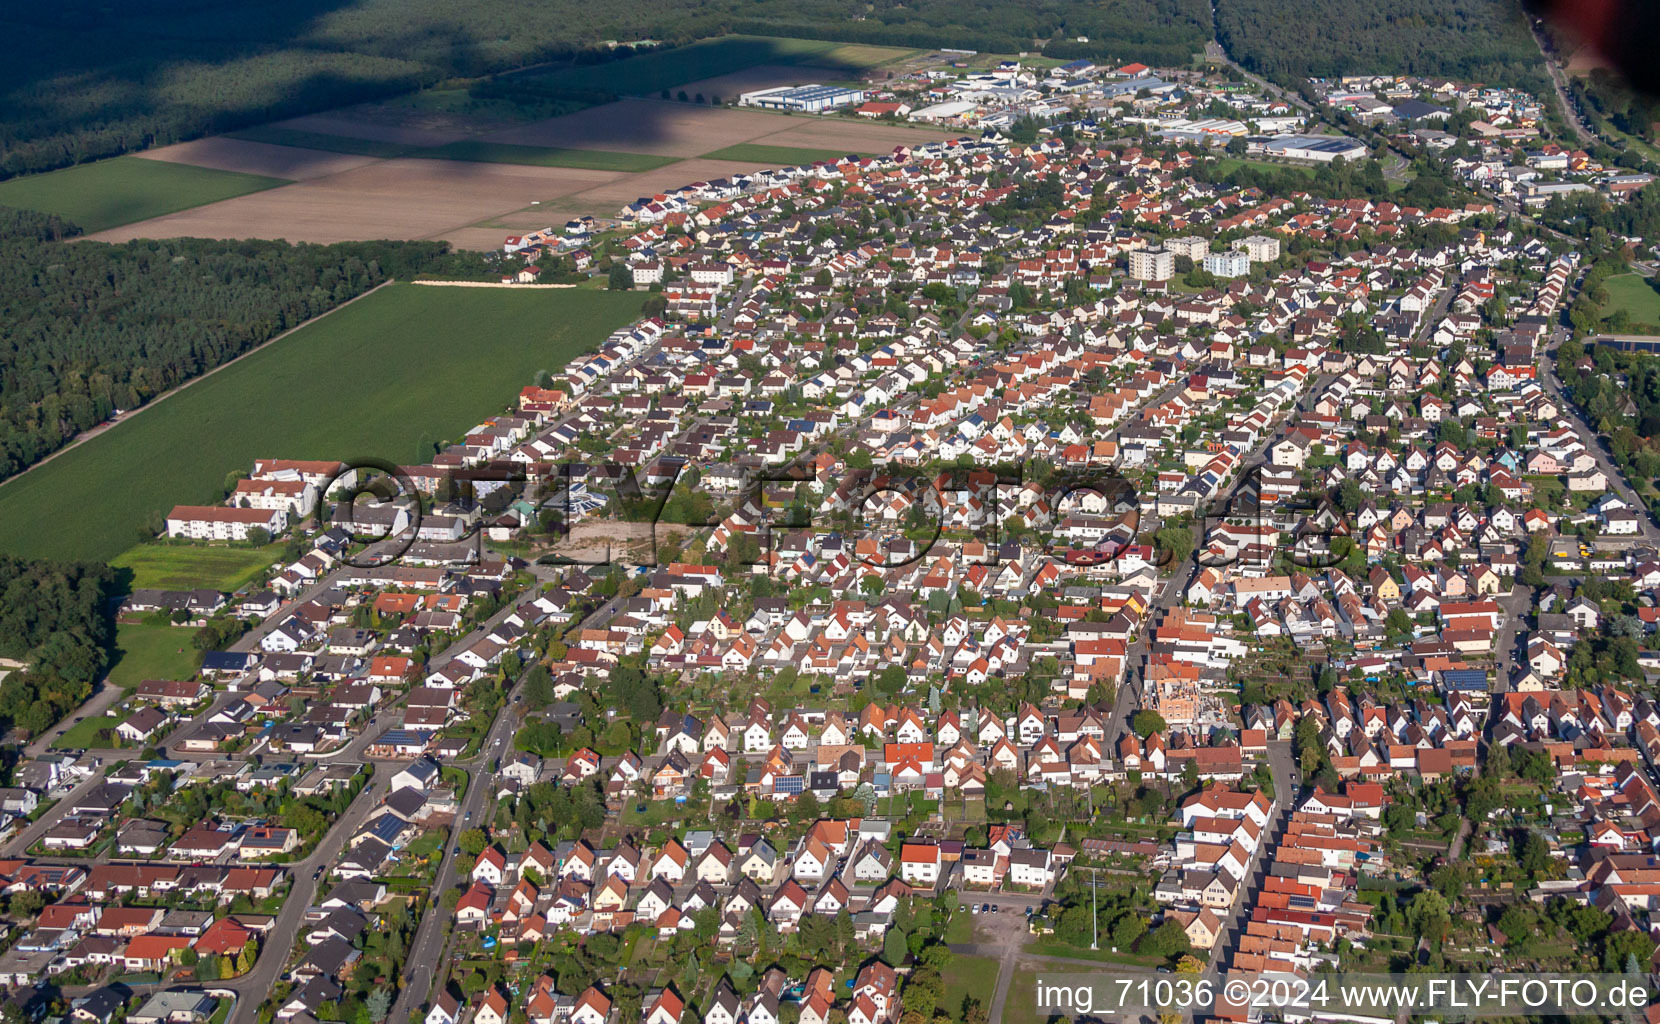 Vue aérienne de De l'ouest à Bellheim dans le département Rhénanie-Palatinat, Allemagne